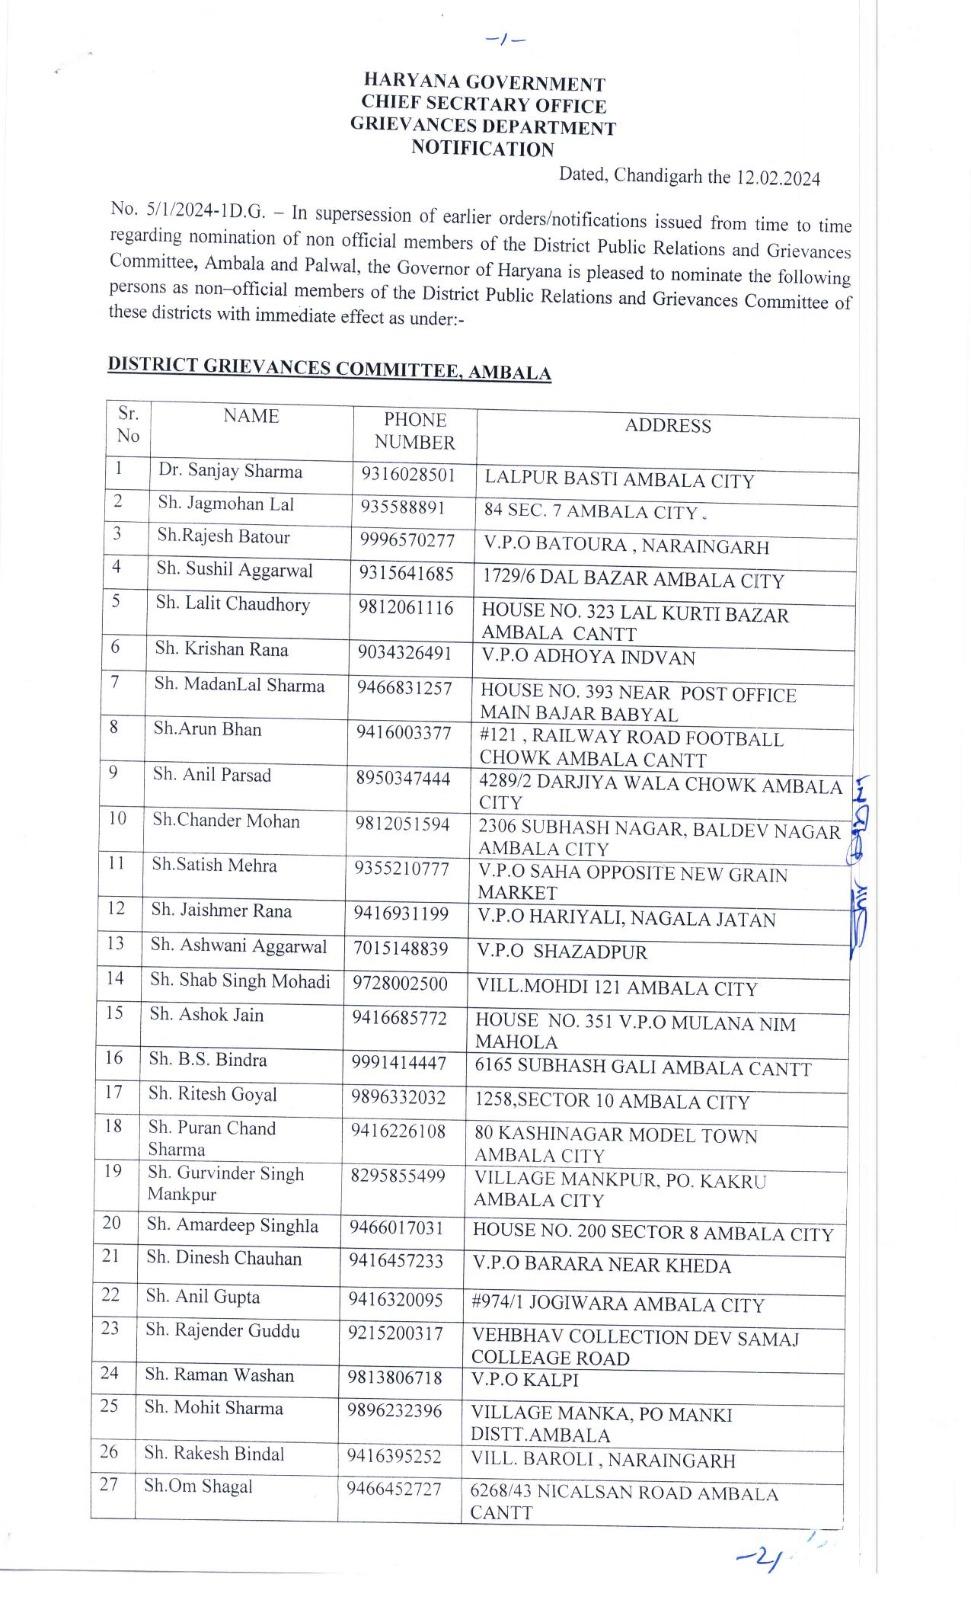 हरियाणा सरकार की तरफ से अंबाला और पलवल जिला में ग्रीवेंस कमेटी के सदस्यों के अहम नियुक्तियां की गई है।